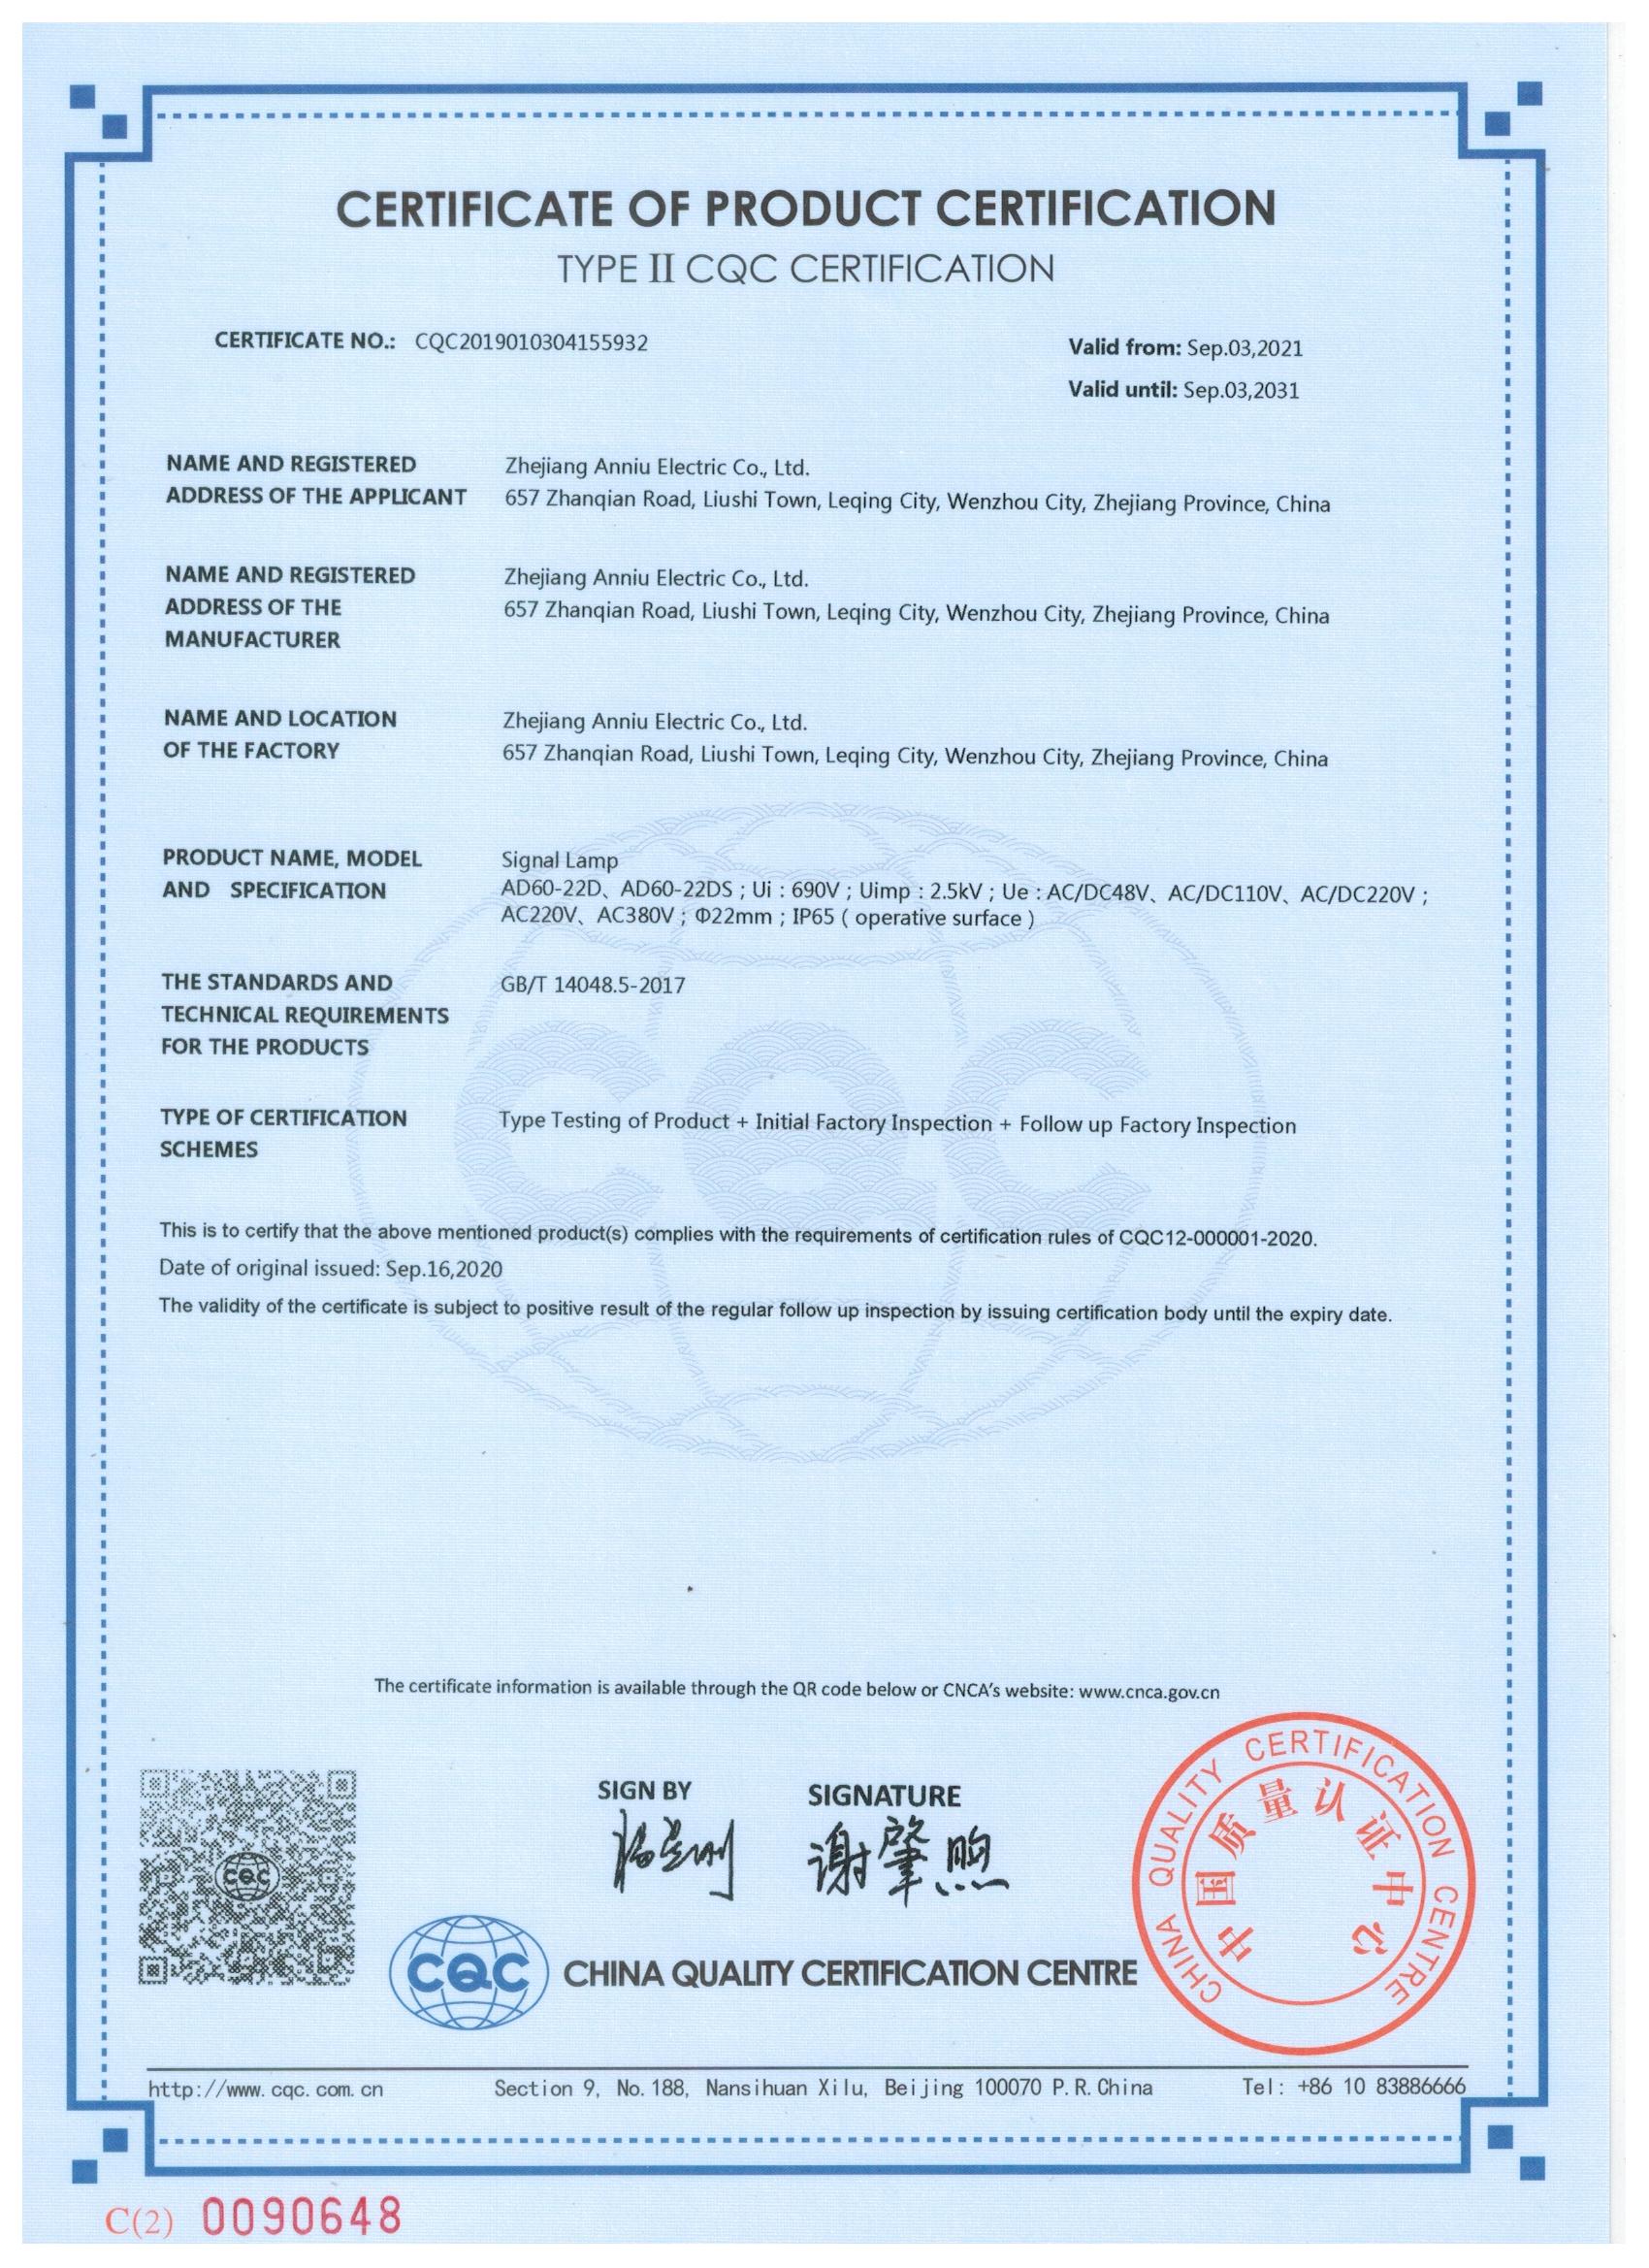 信号灯AD60-22D自愿认证CQC证书